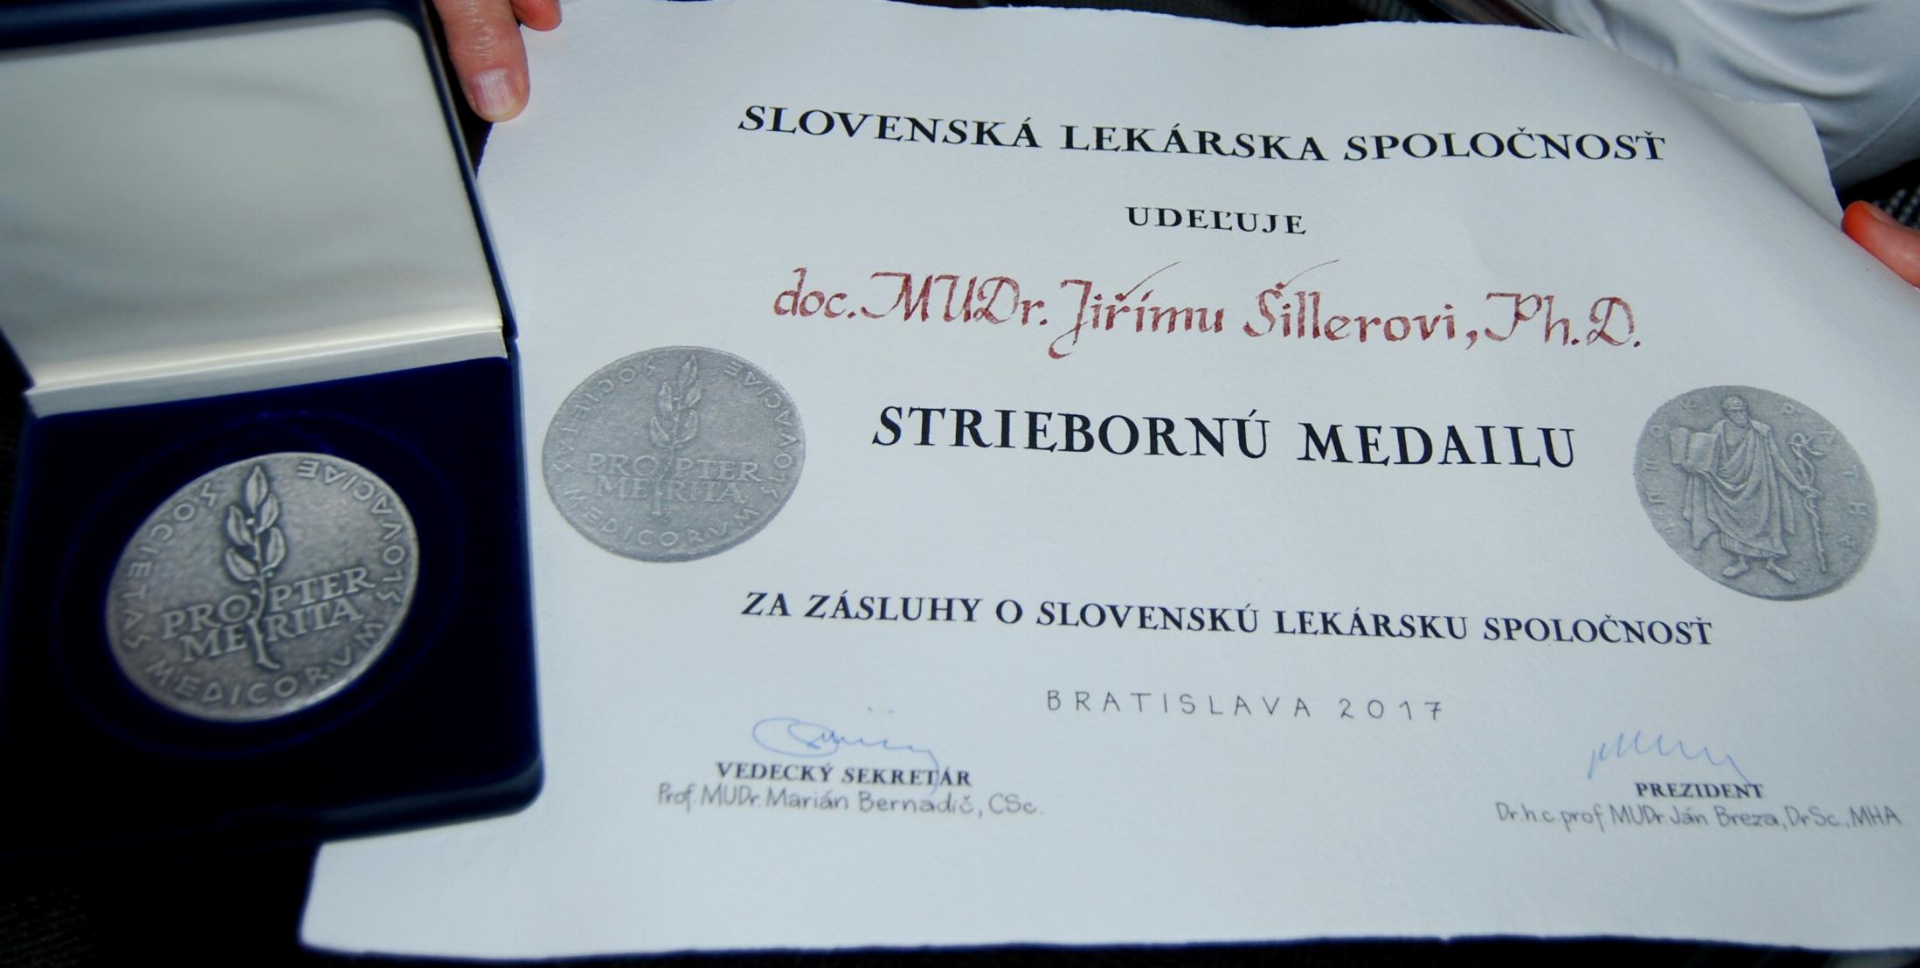 Docent Šiller obdržel významné ocenění od Slovenské lékařské společnosti